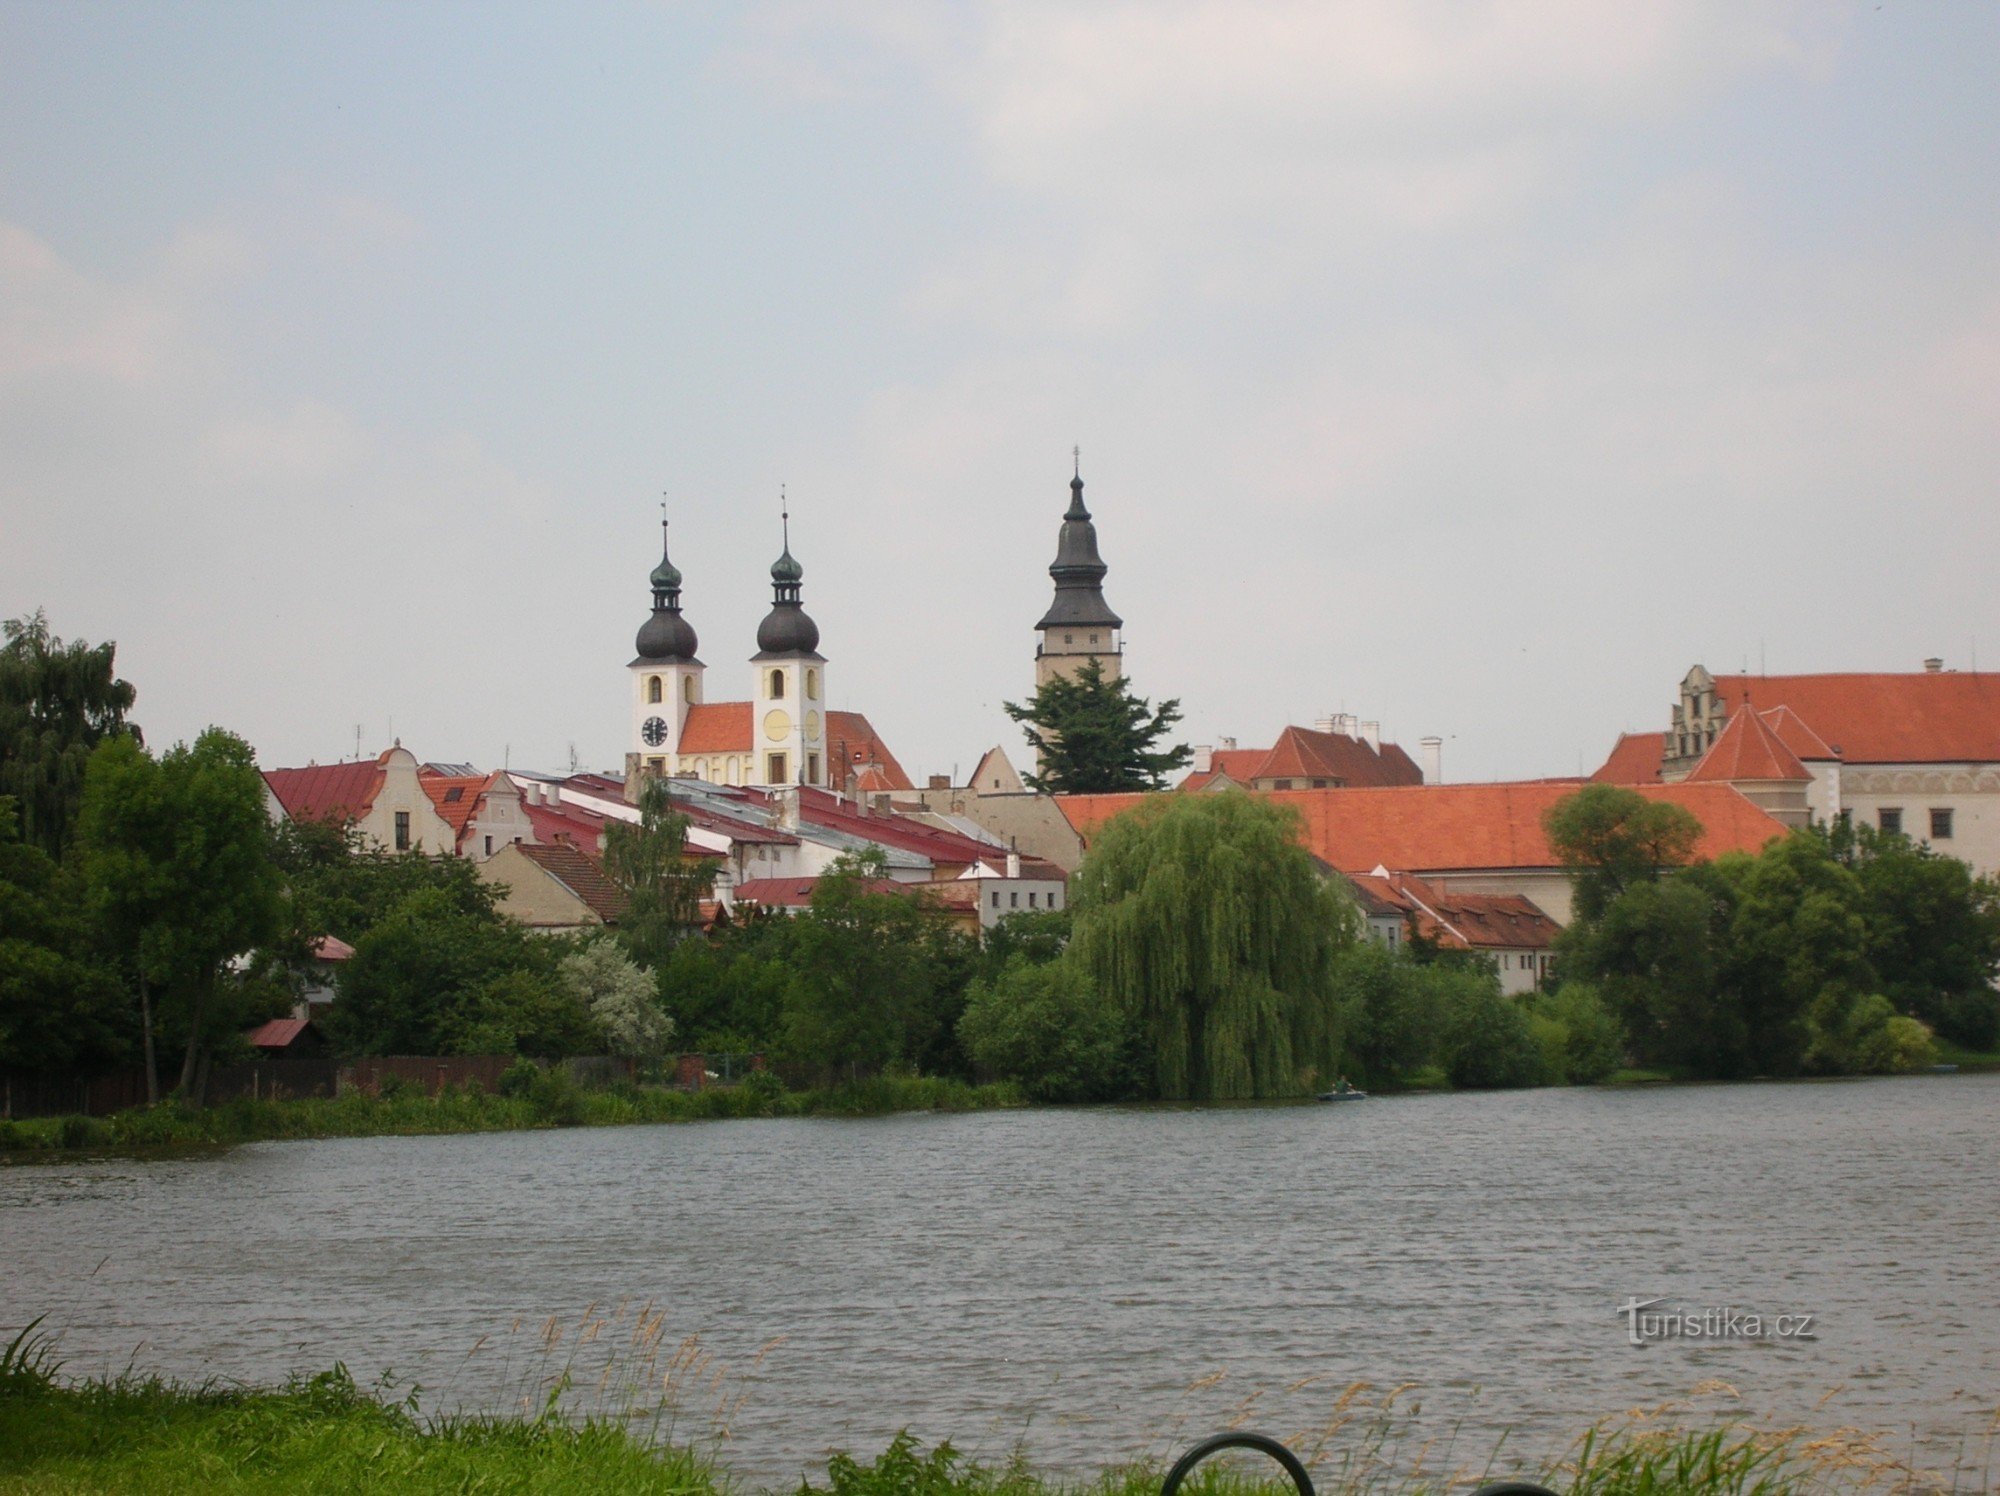 Άποψη της πόλης Telč